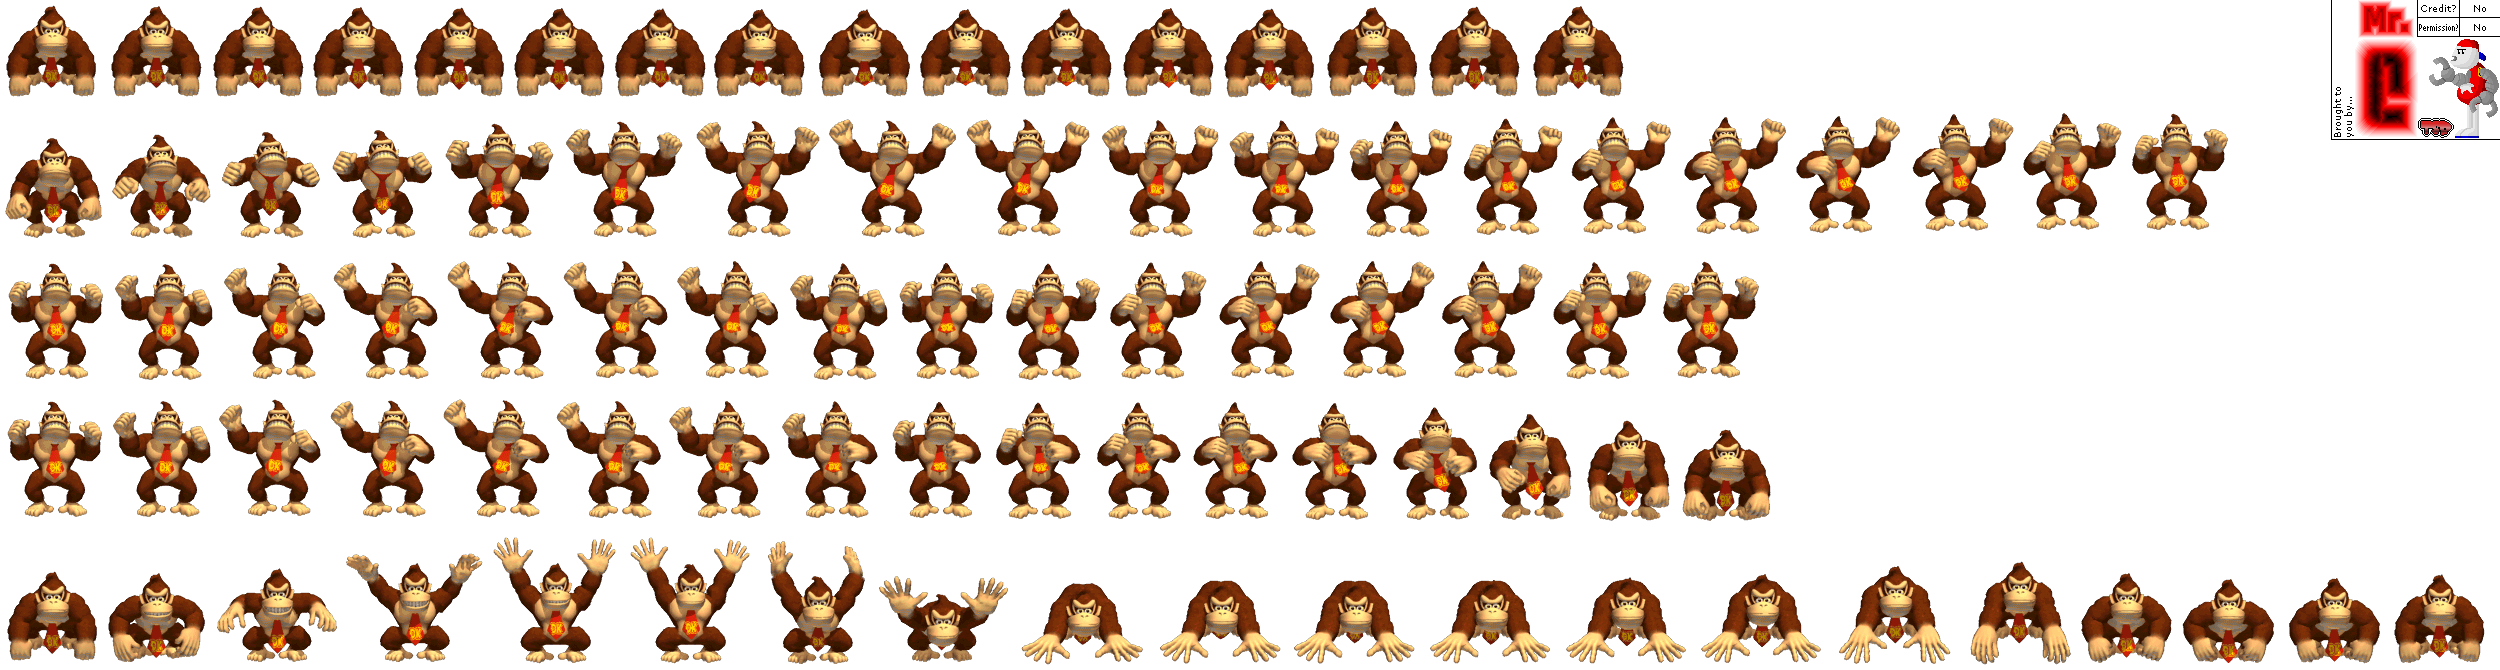 Donkey Konga 2 - Donkey Kong (Main Menu)